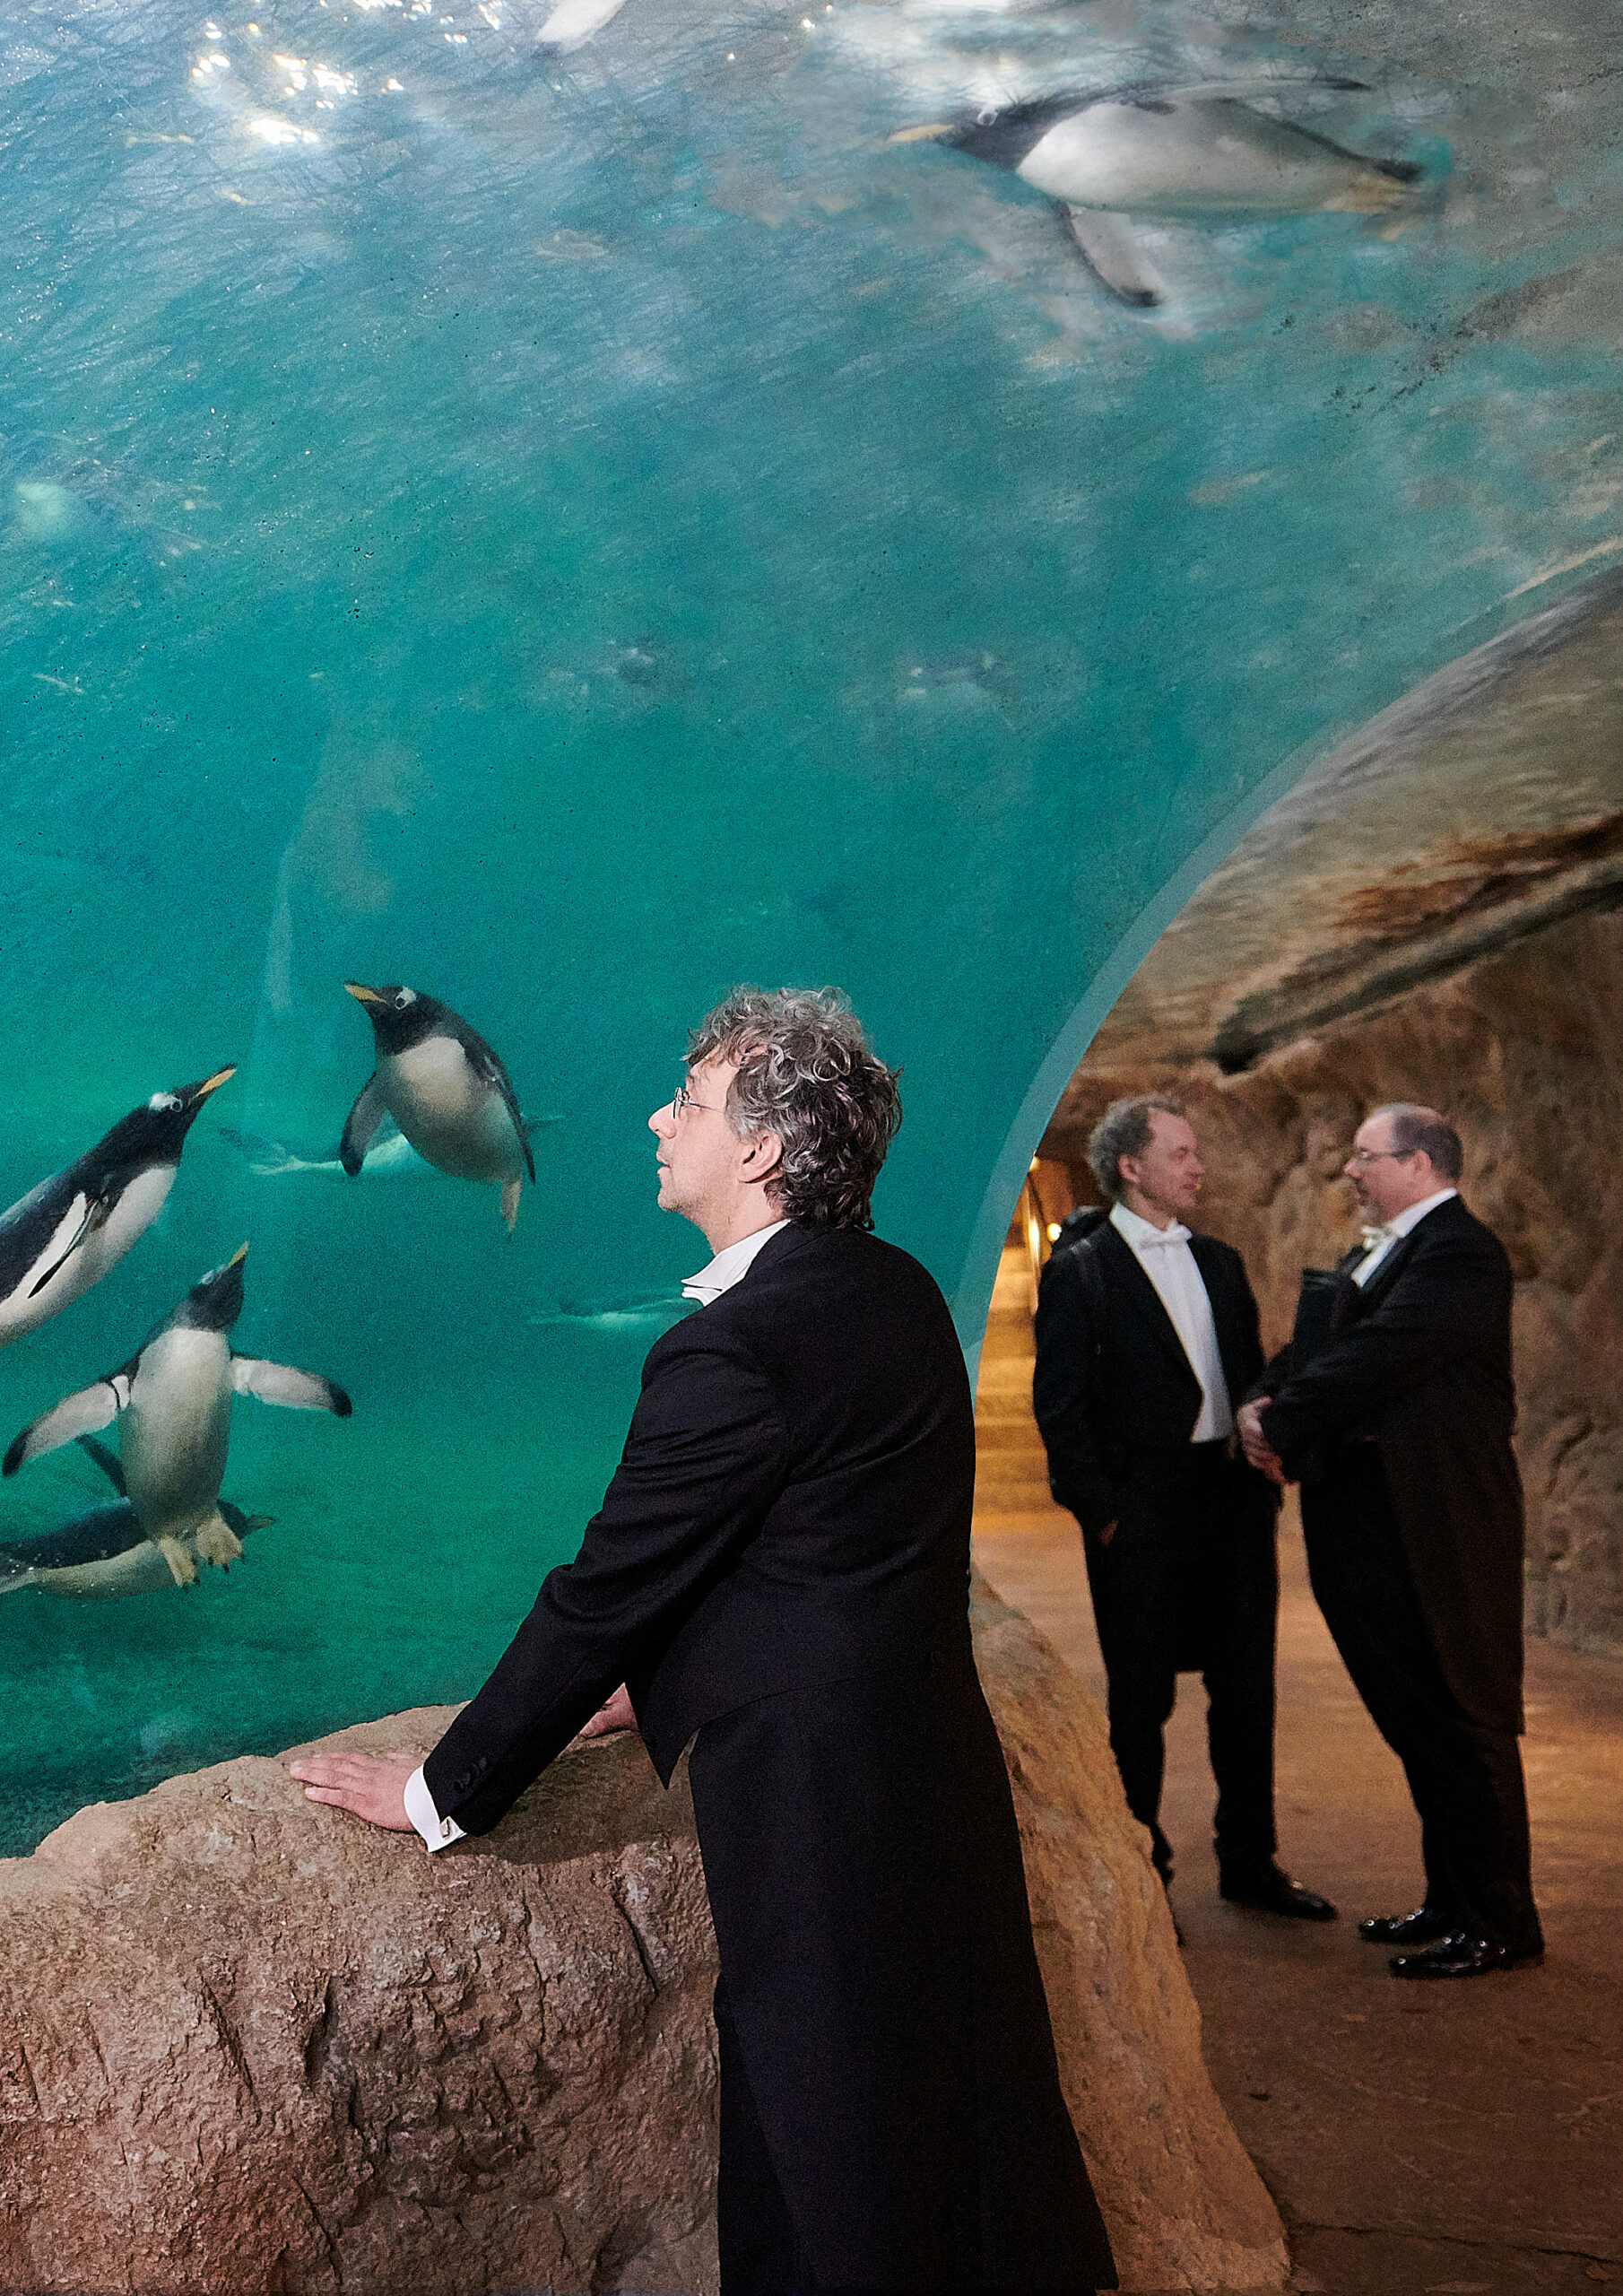 Das Foto entstand im Pinguinehaus des Wuppertaler Zoos. Im Vordergrund beobachtet ein Musiker Pinguine beim schwimmen. Im Hintergrund sind zwei weitere Msuiker ins Gespräch vertieft. Alle tragen ihre Konzertkleidung.